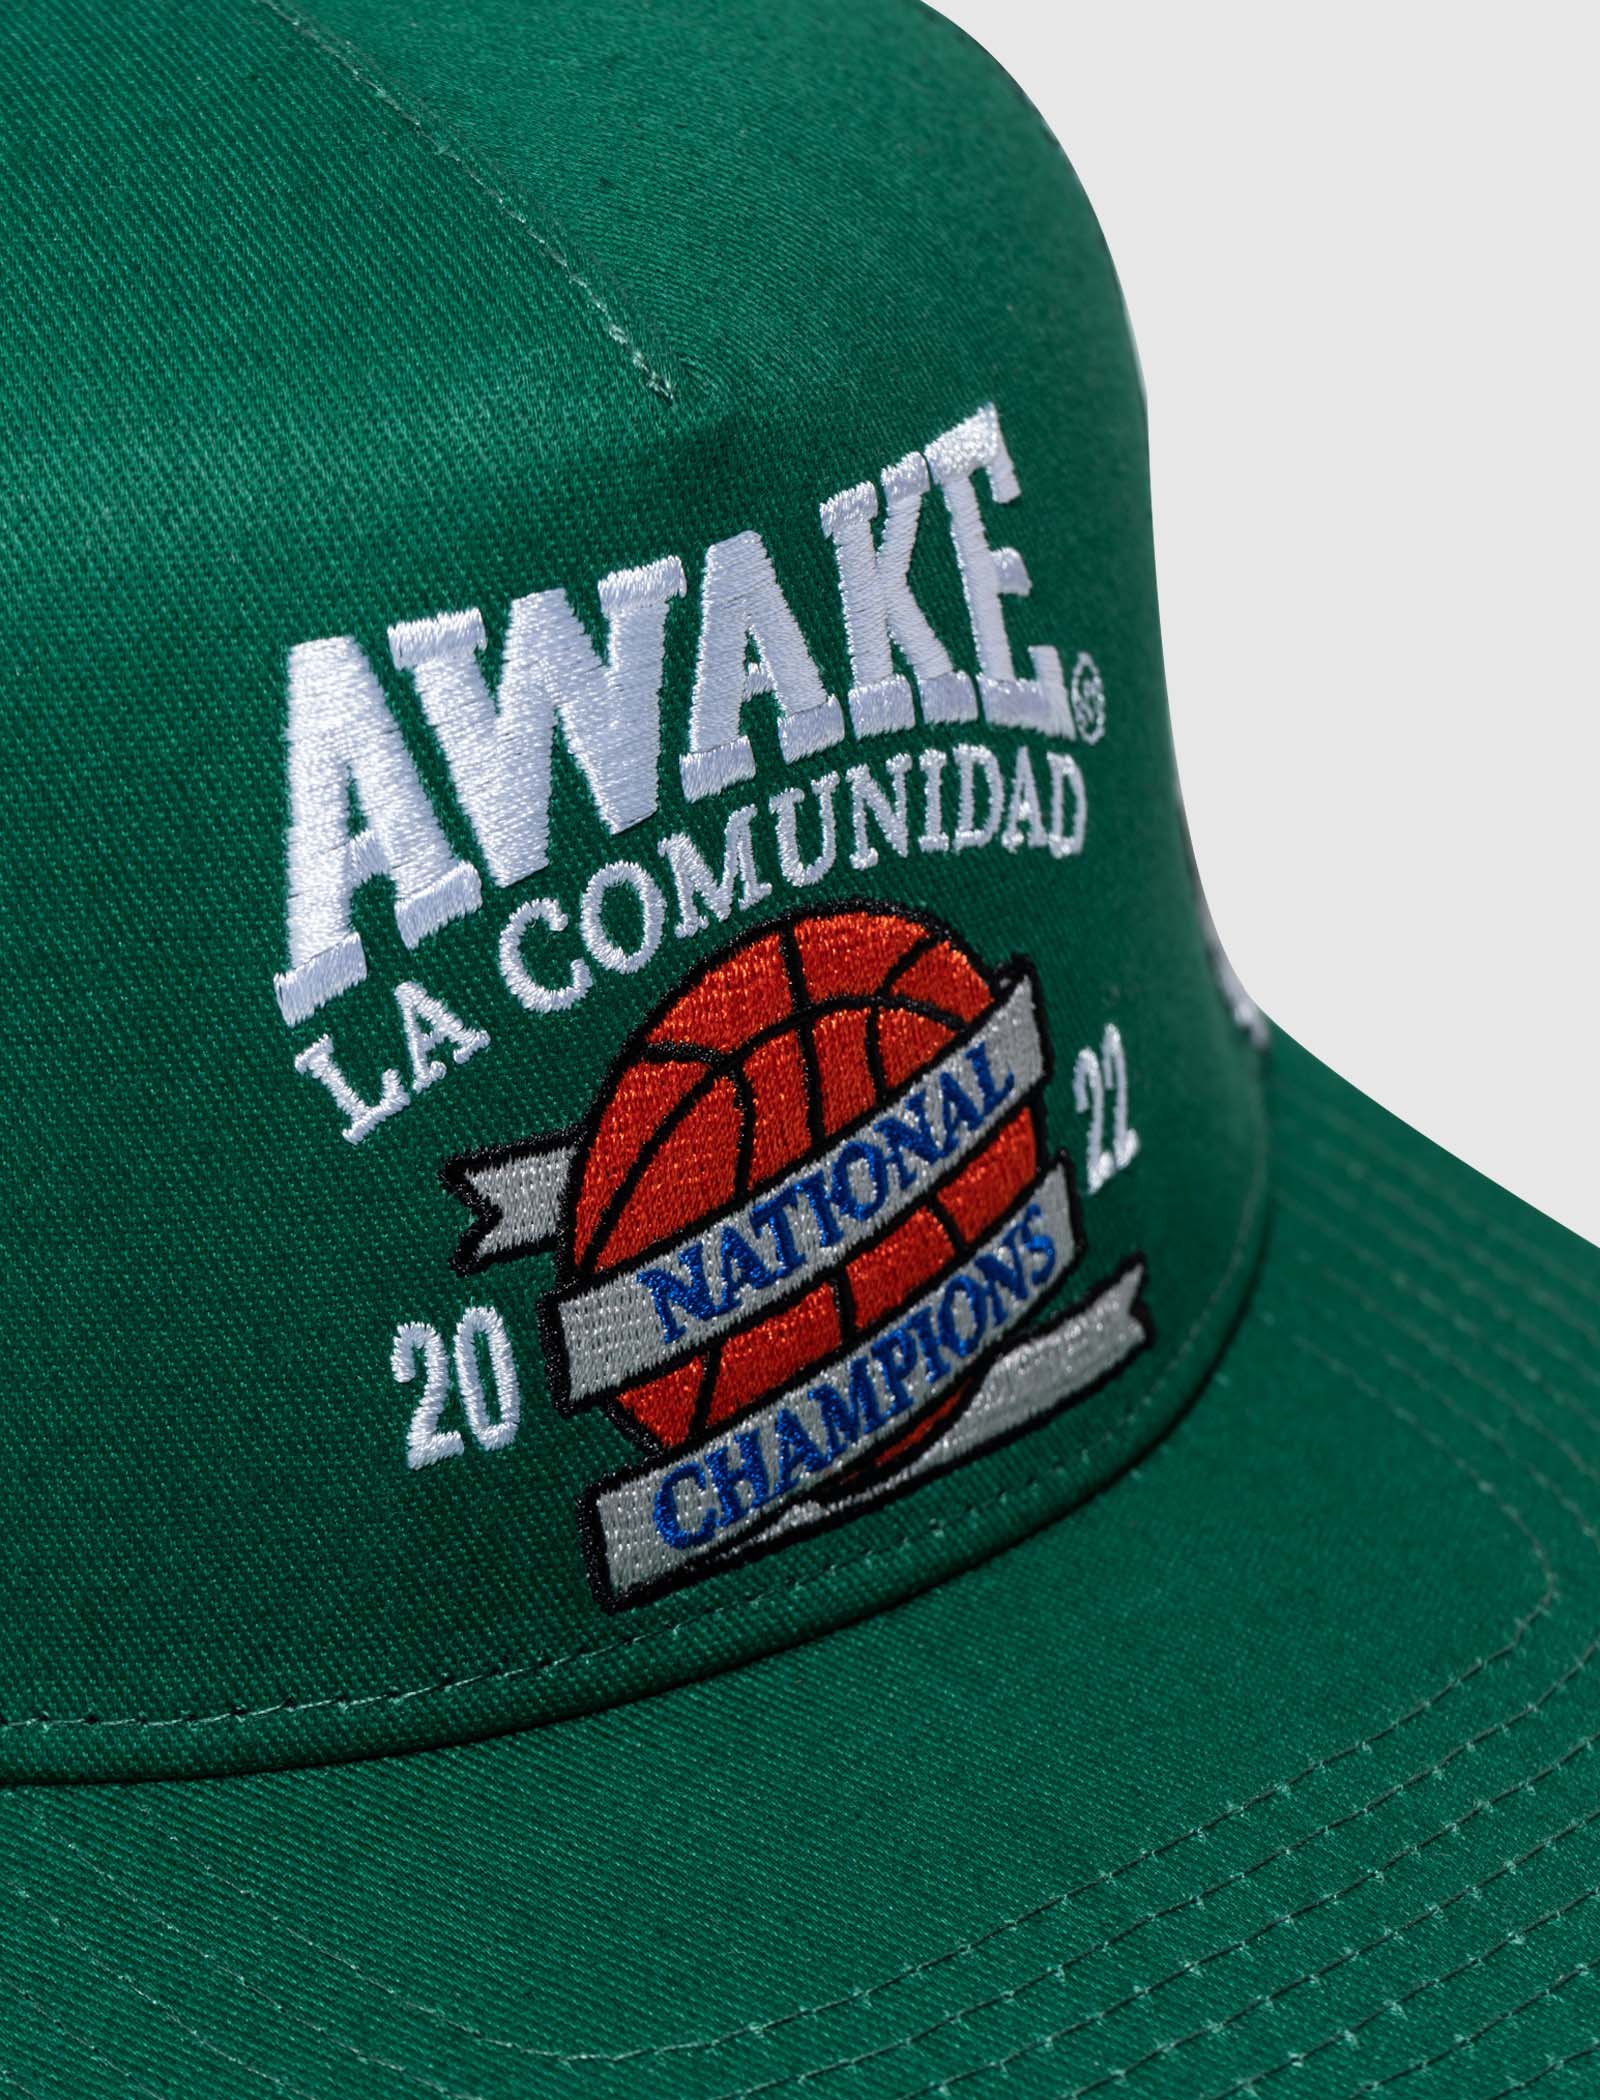 AWAKE NY NATIONAL CHAMPIONS TRUCKER HAT